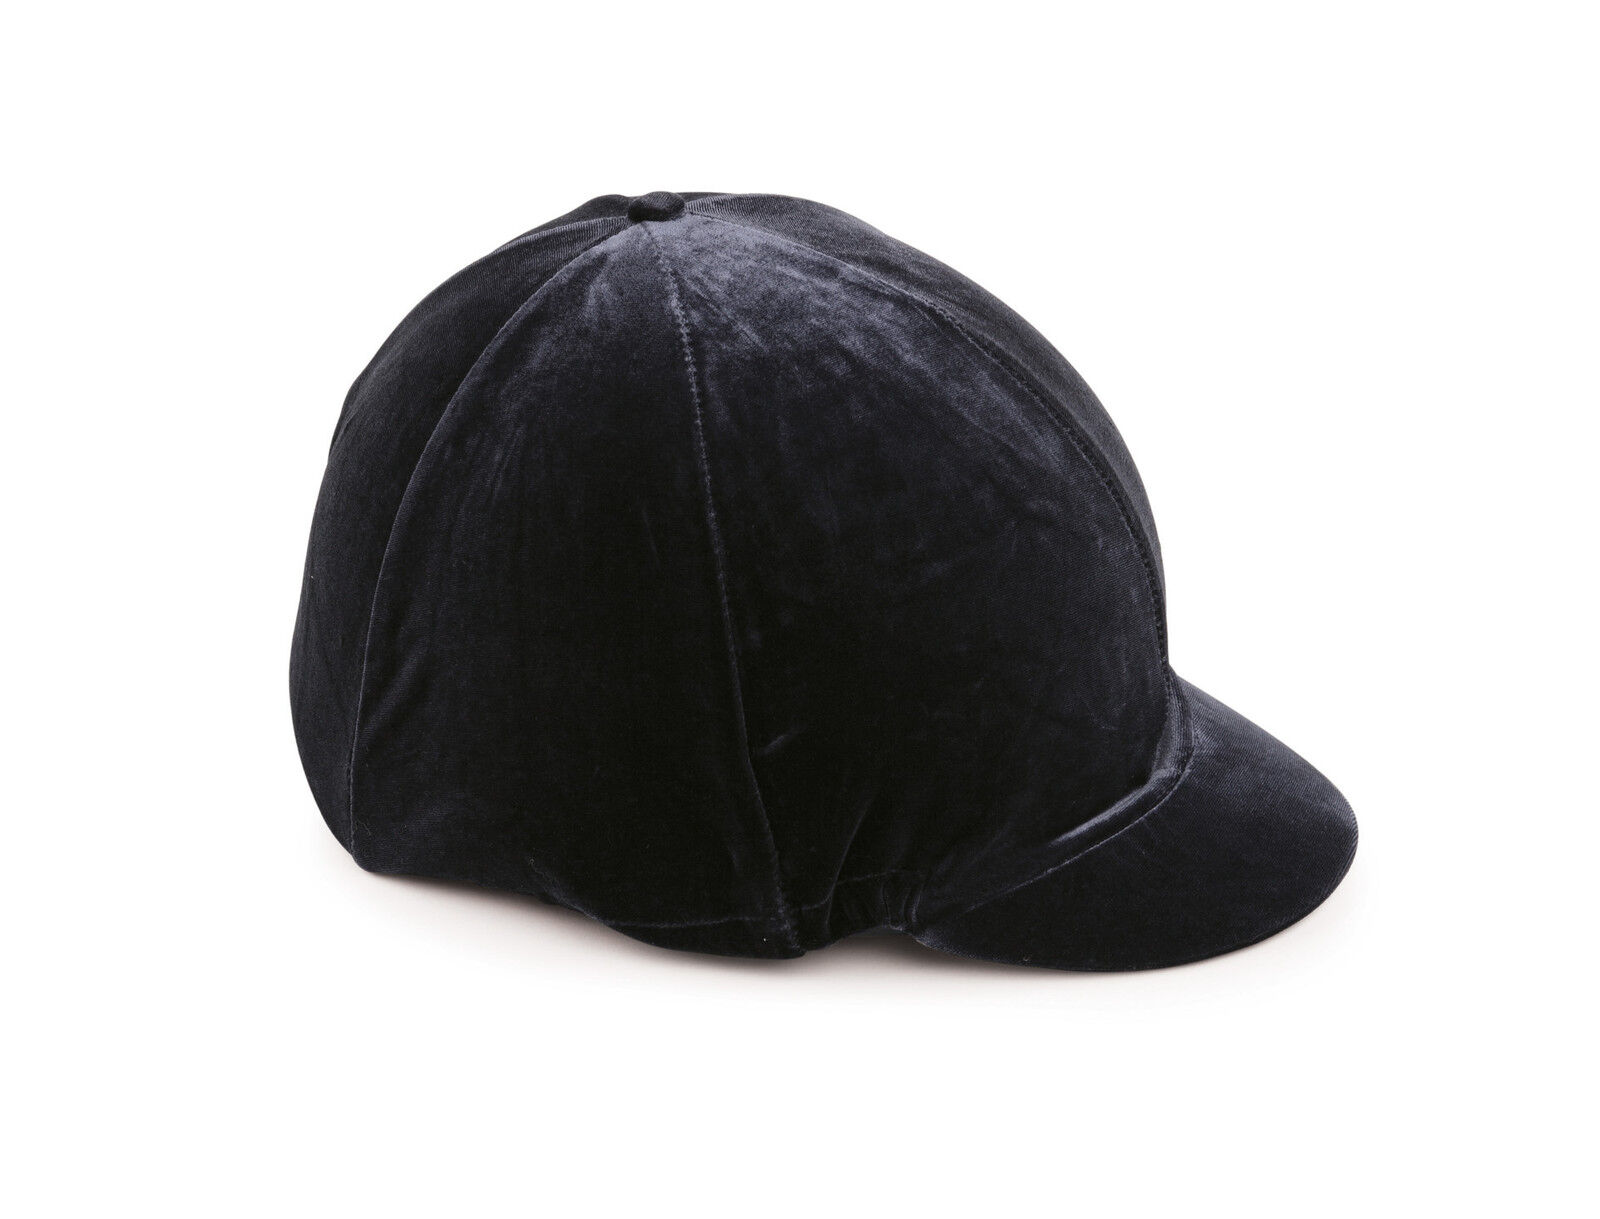 SHIRES VELVET LOOK VELVETEEN HAT SILK COVER JOCKEY SKULL CAPS BLACK NAVY BROWN